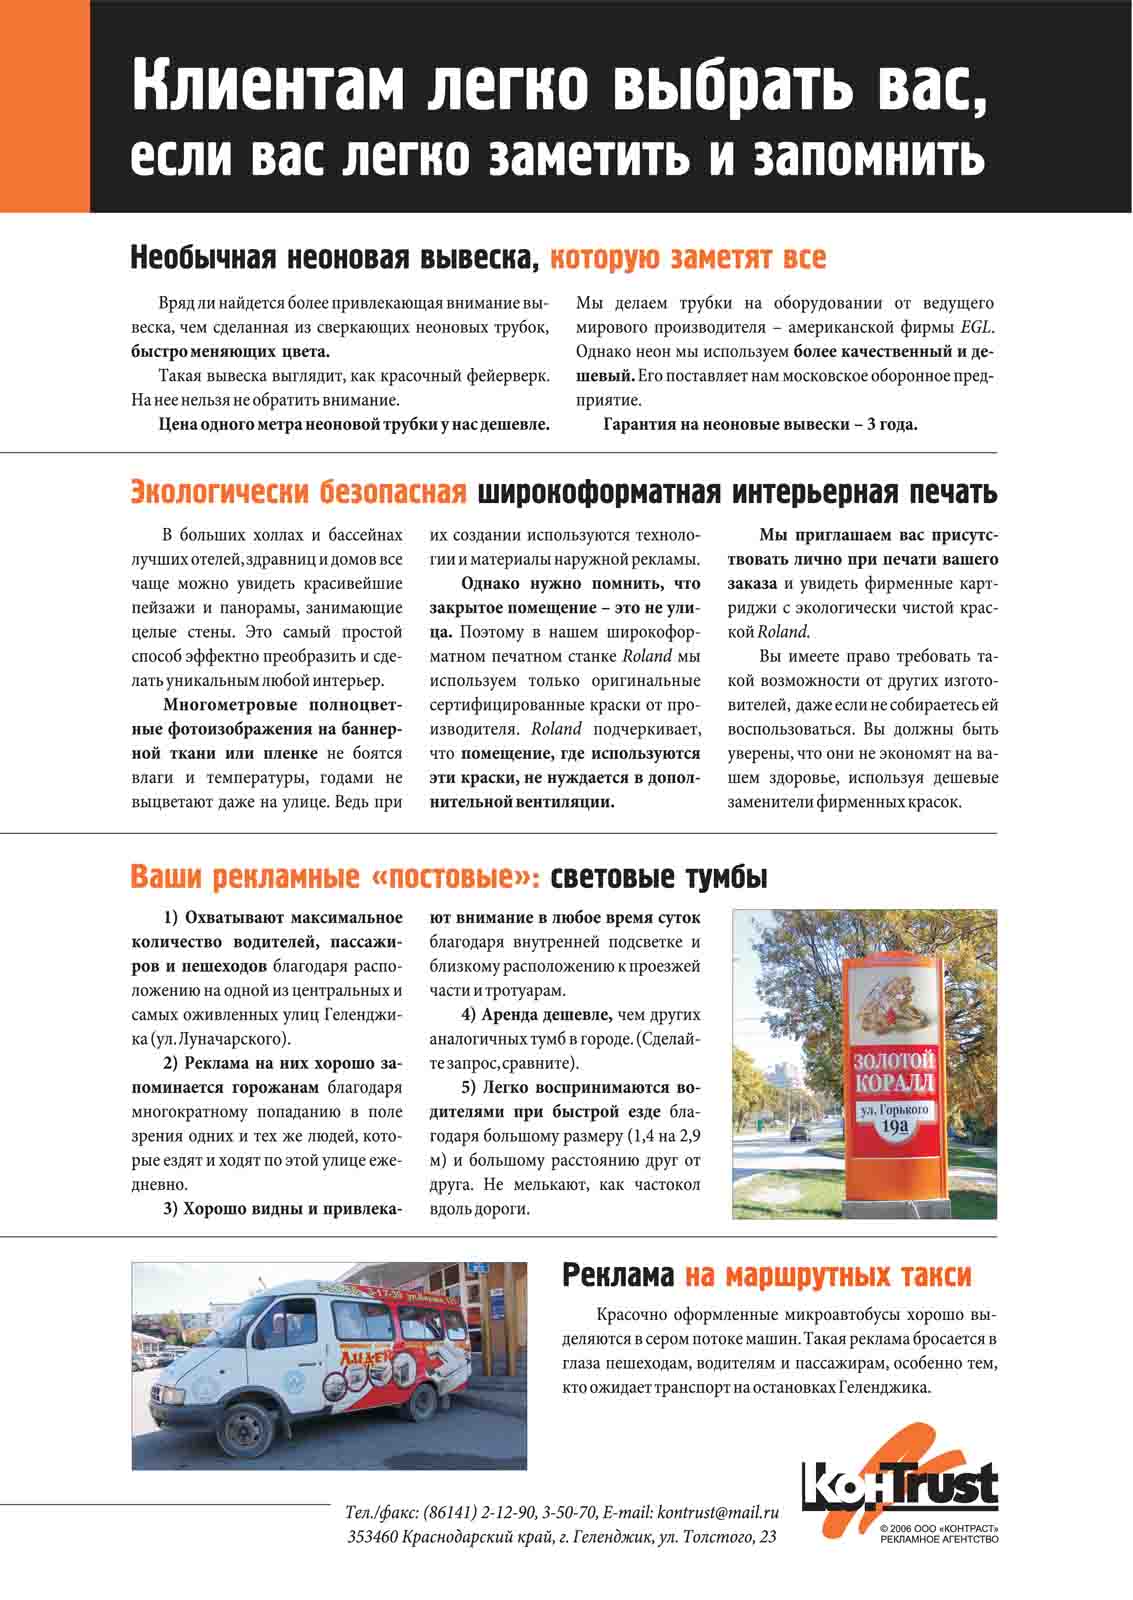 Печатная реклама, Денис Богомолов, РА «Контраст»